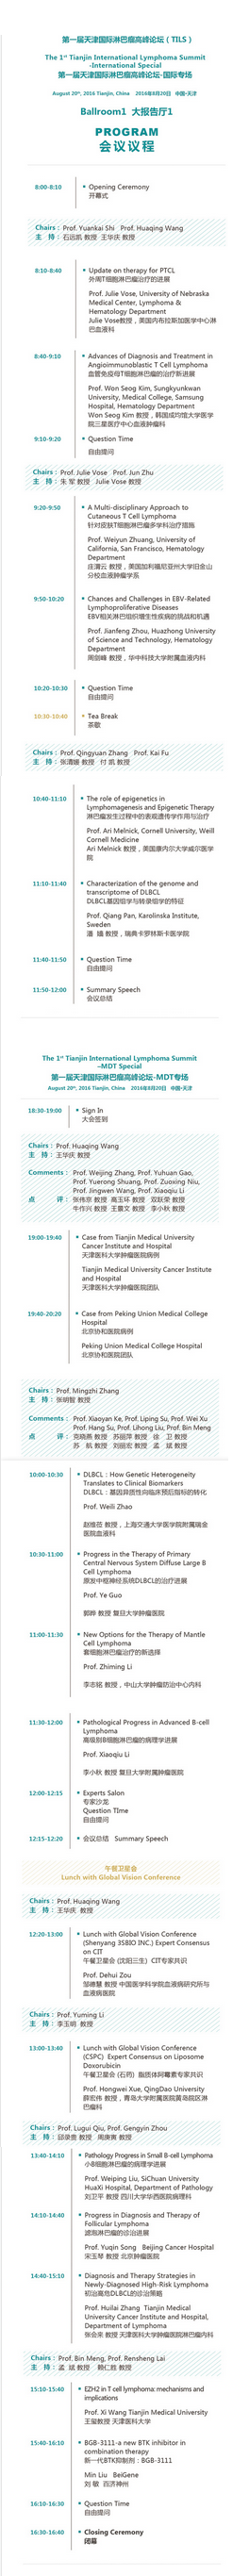 第一届天津国际淋巴瘤高峰论坛会议日程.png